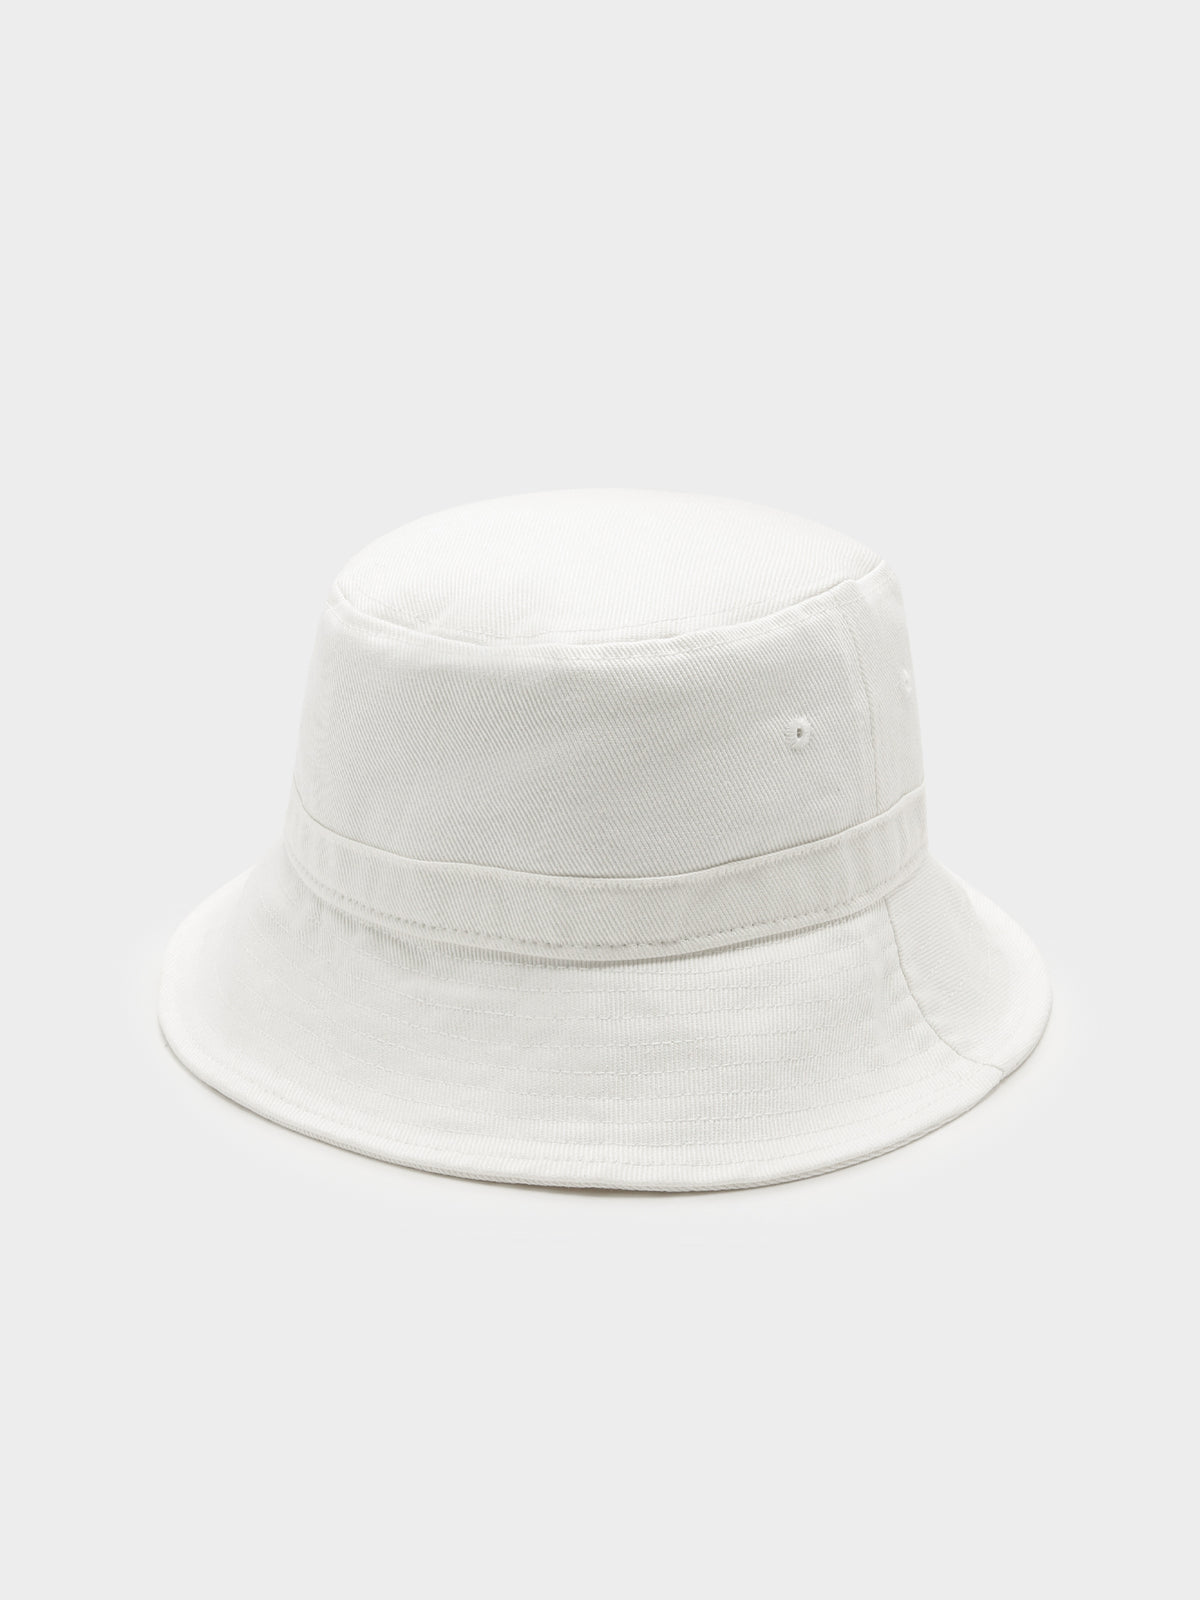 Originals Bucket Hat in White